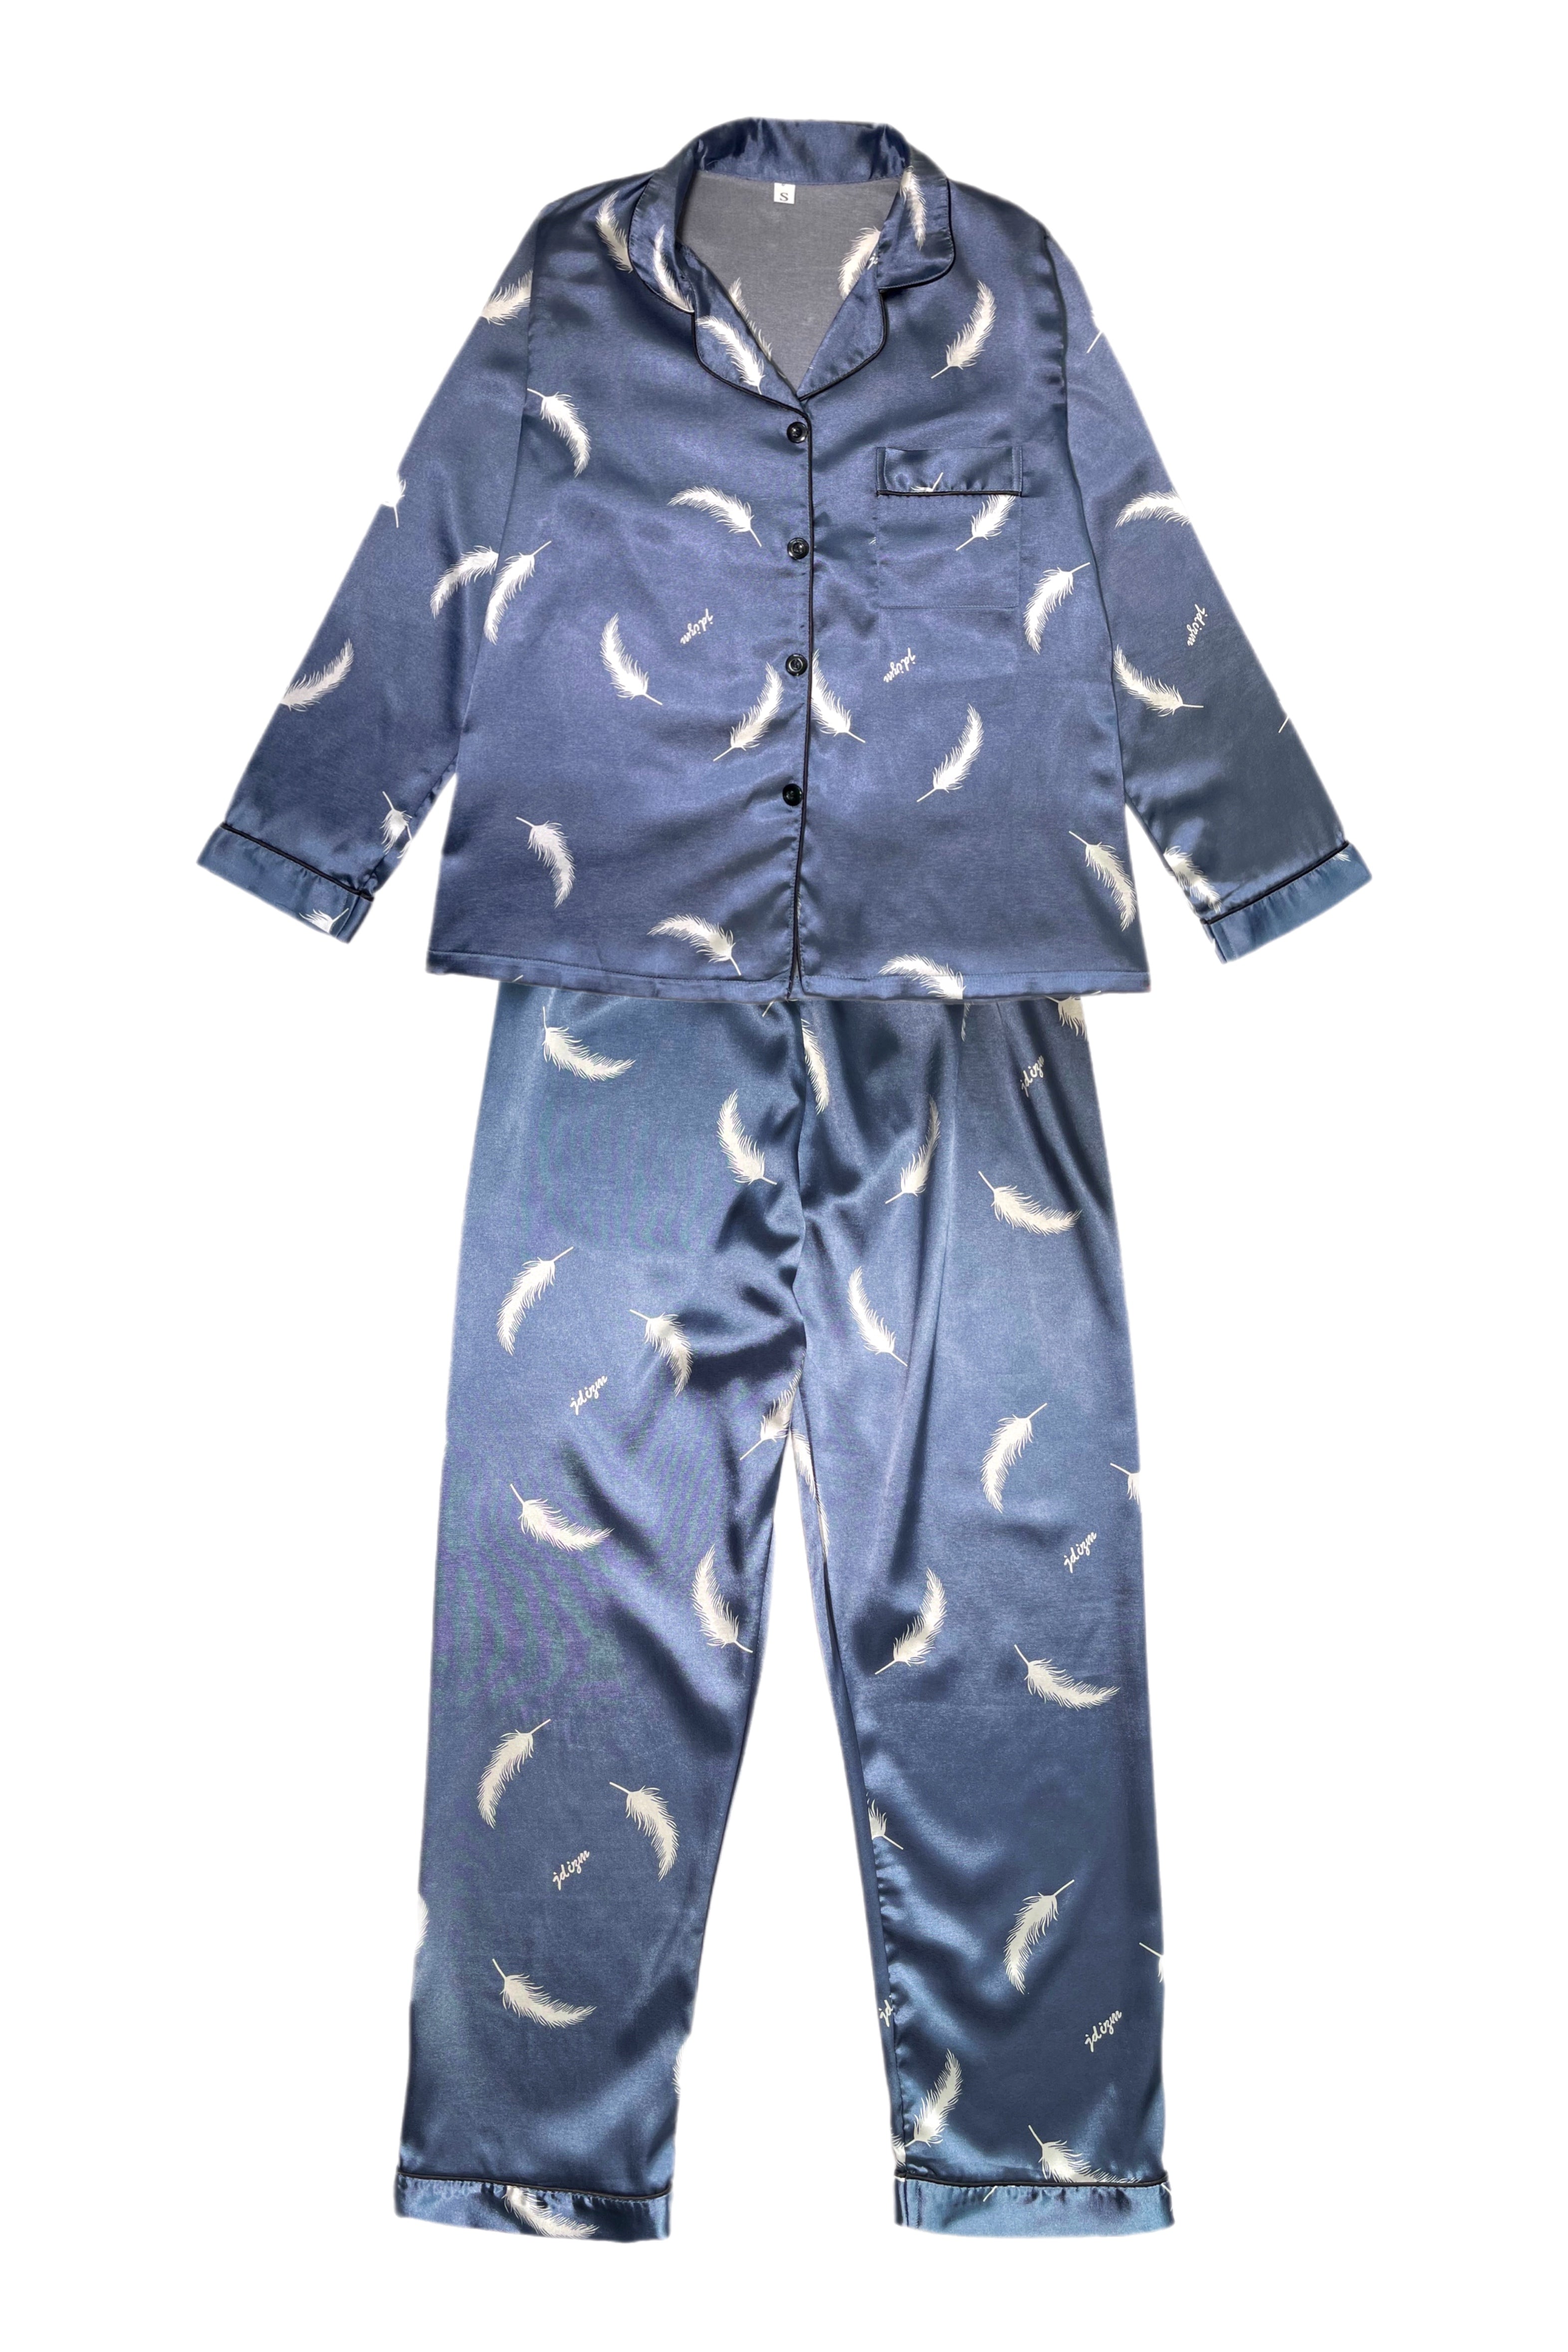 Charlotta blue pajamas